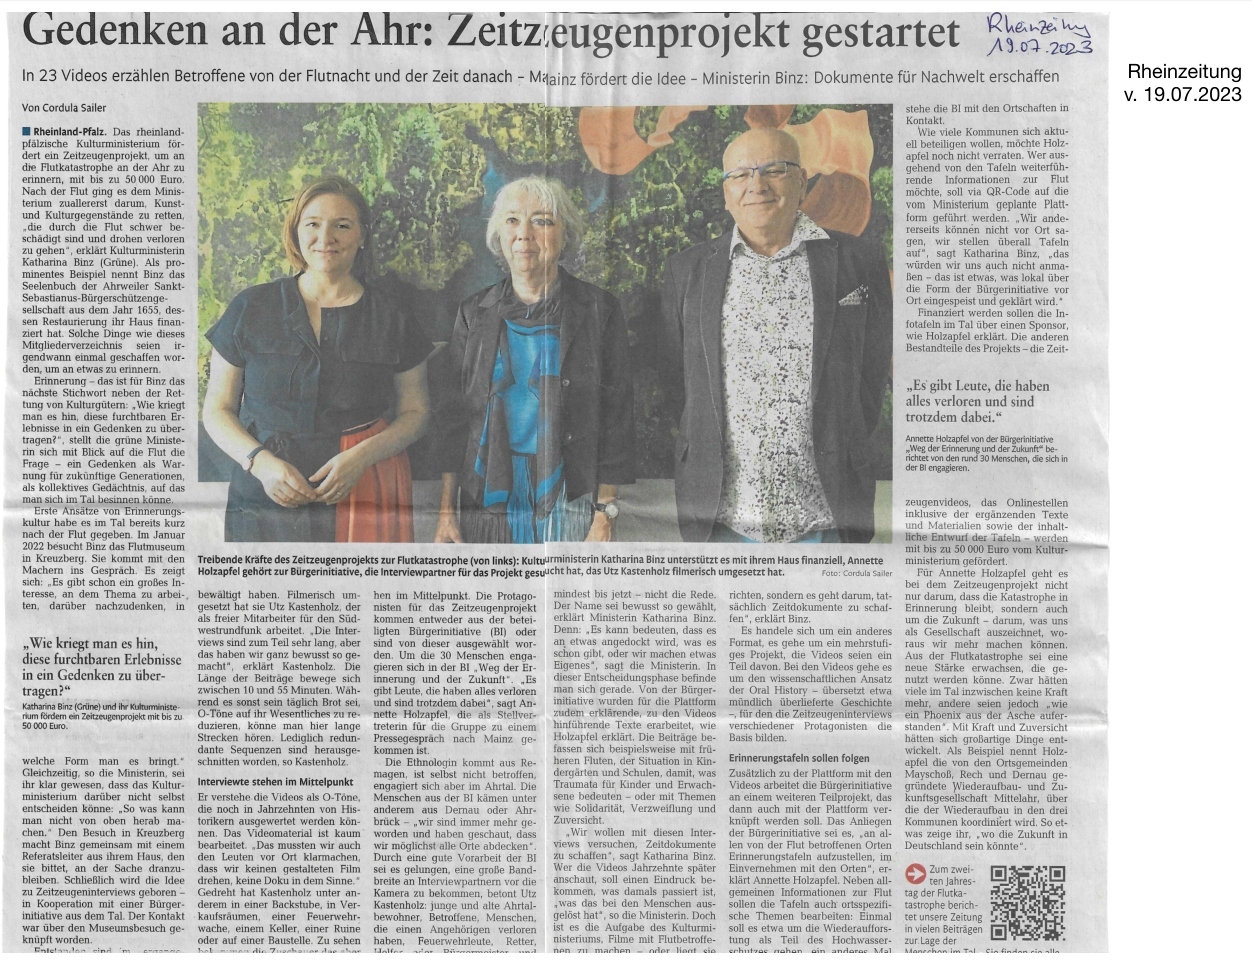 Bericht der Rheinzeitung vom 19.07.2023